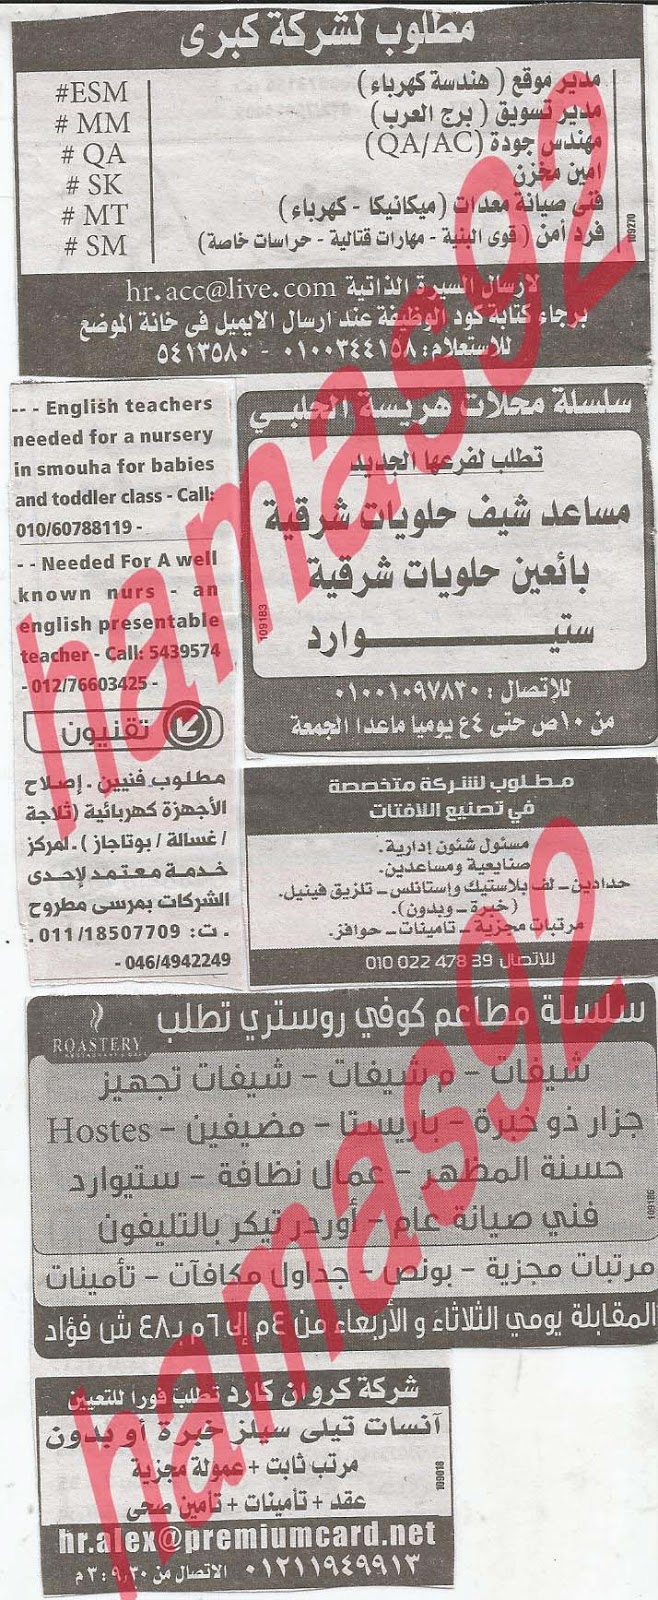 وظائف خالية فى جريدة الوسيط الاسكندرية الثلاثاء 23-04-2013 %D9%88+%D8%B3+%D8%B3+14